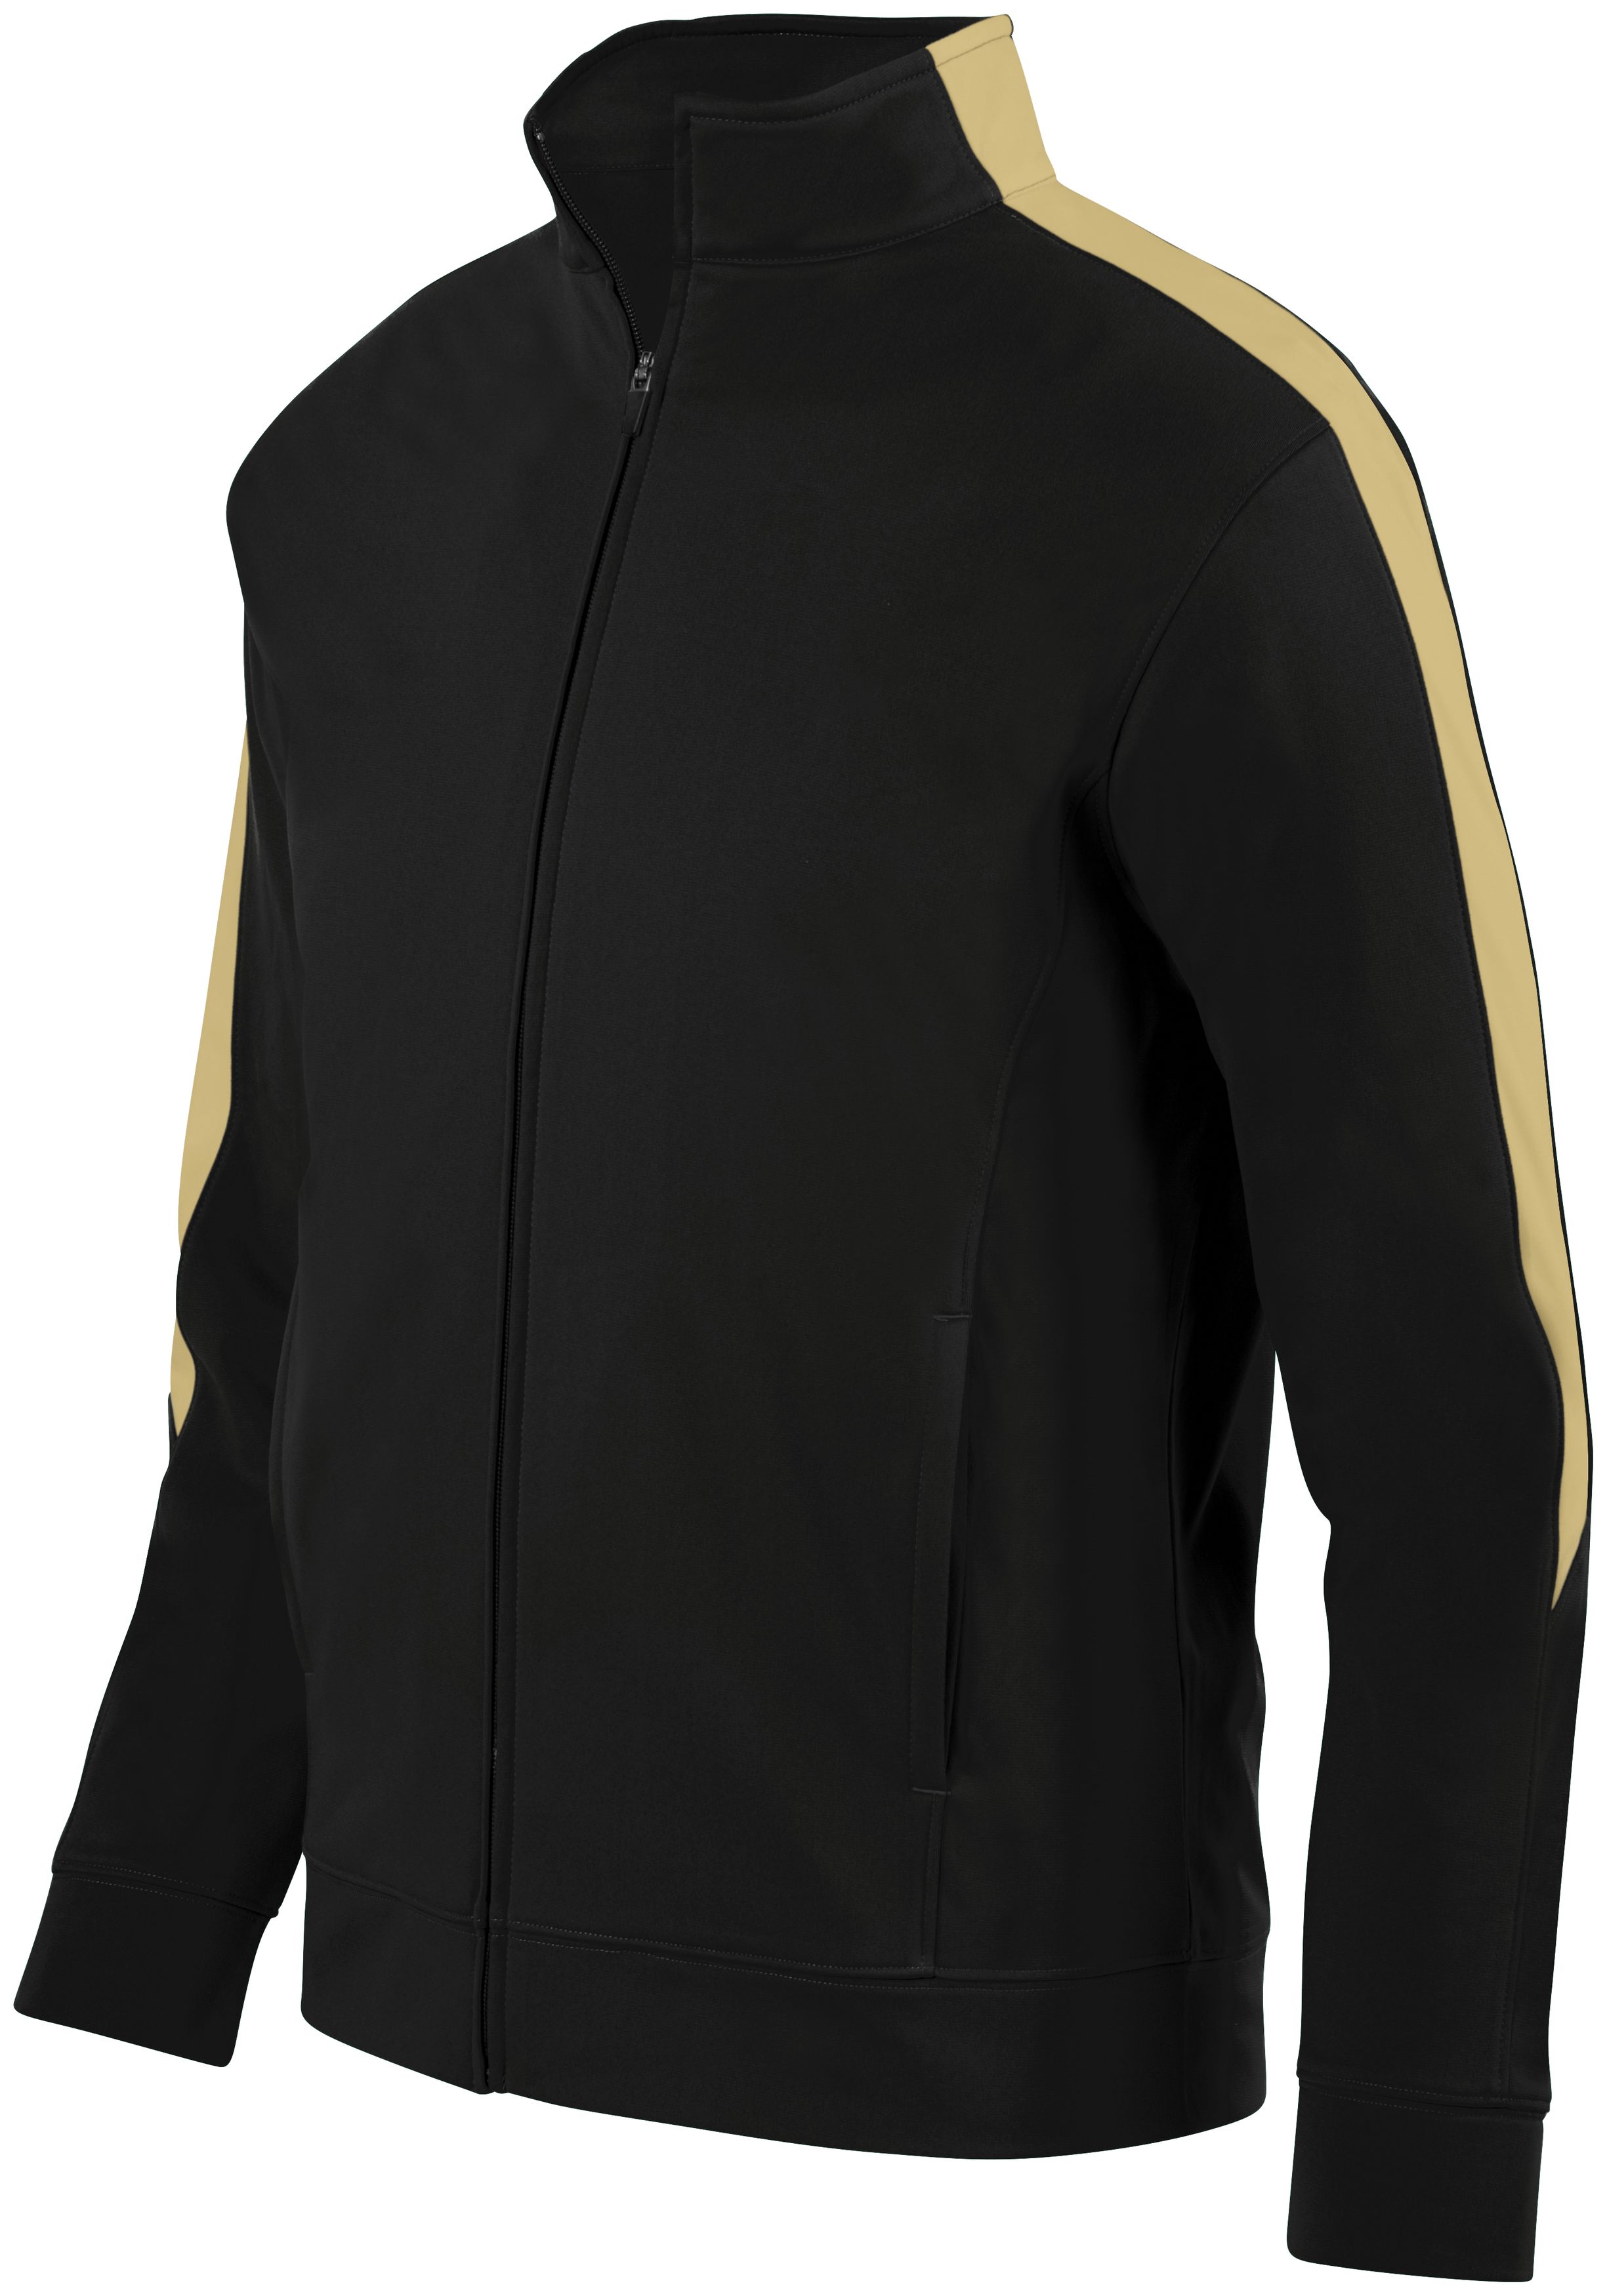 Augusta Sportswear 4396 - Youth Medalist Jacket 2.0